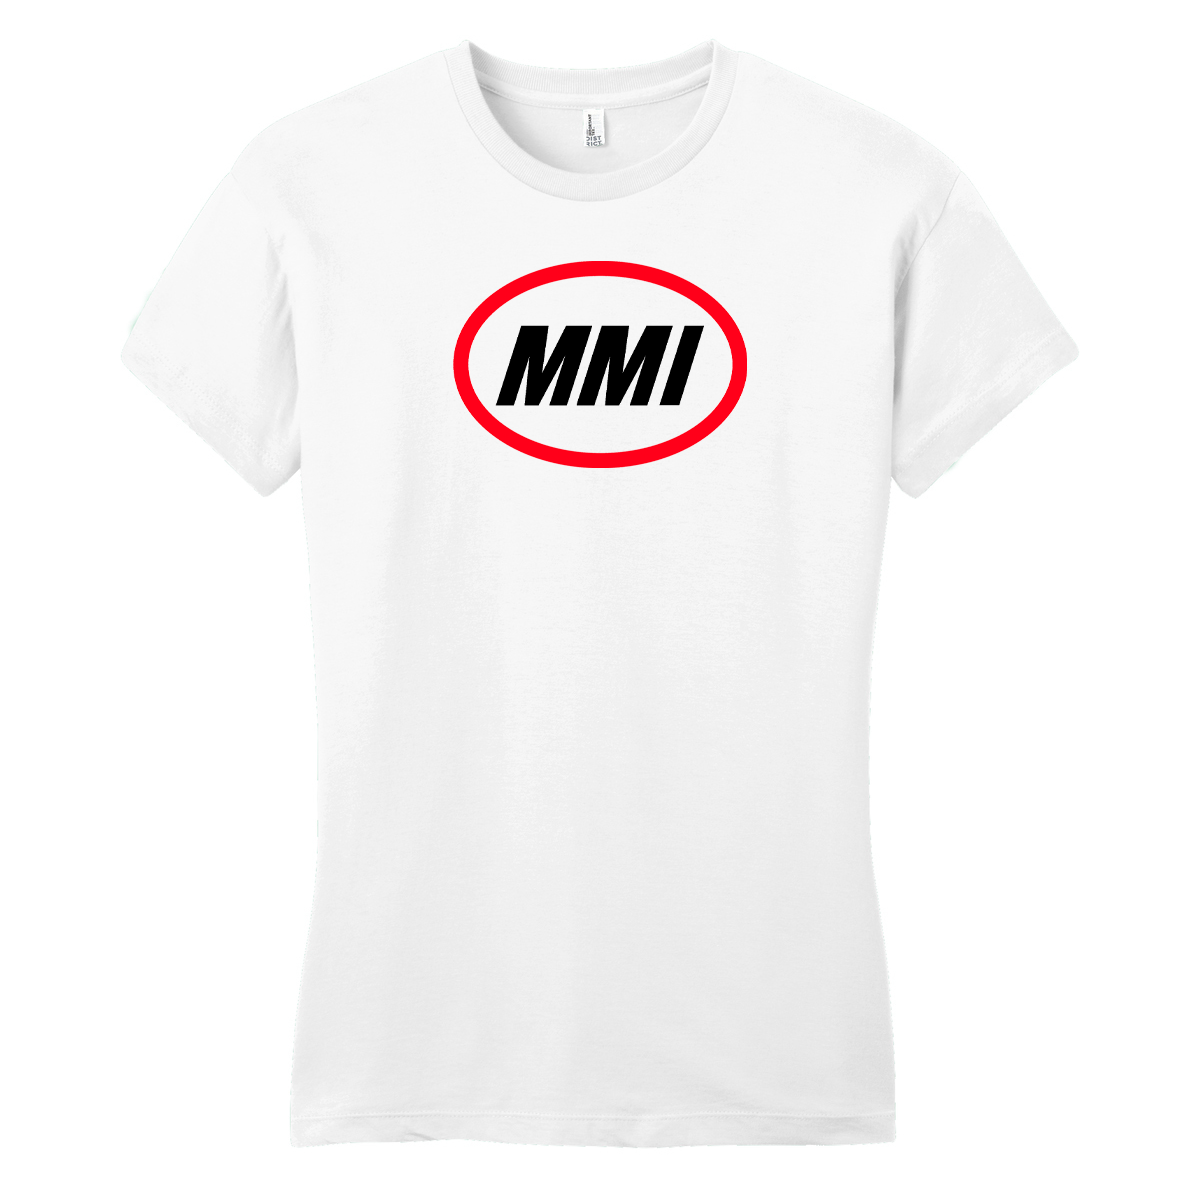 MMI (Moto) Iconic Logo Womens T-Shirt